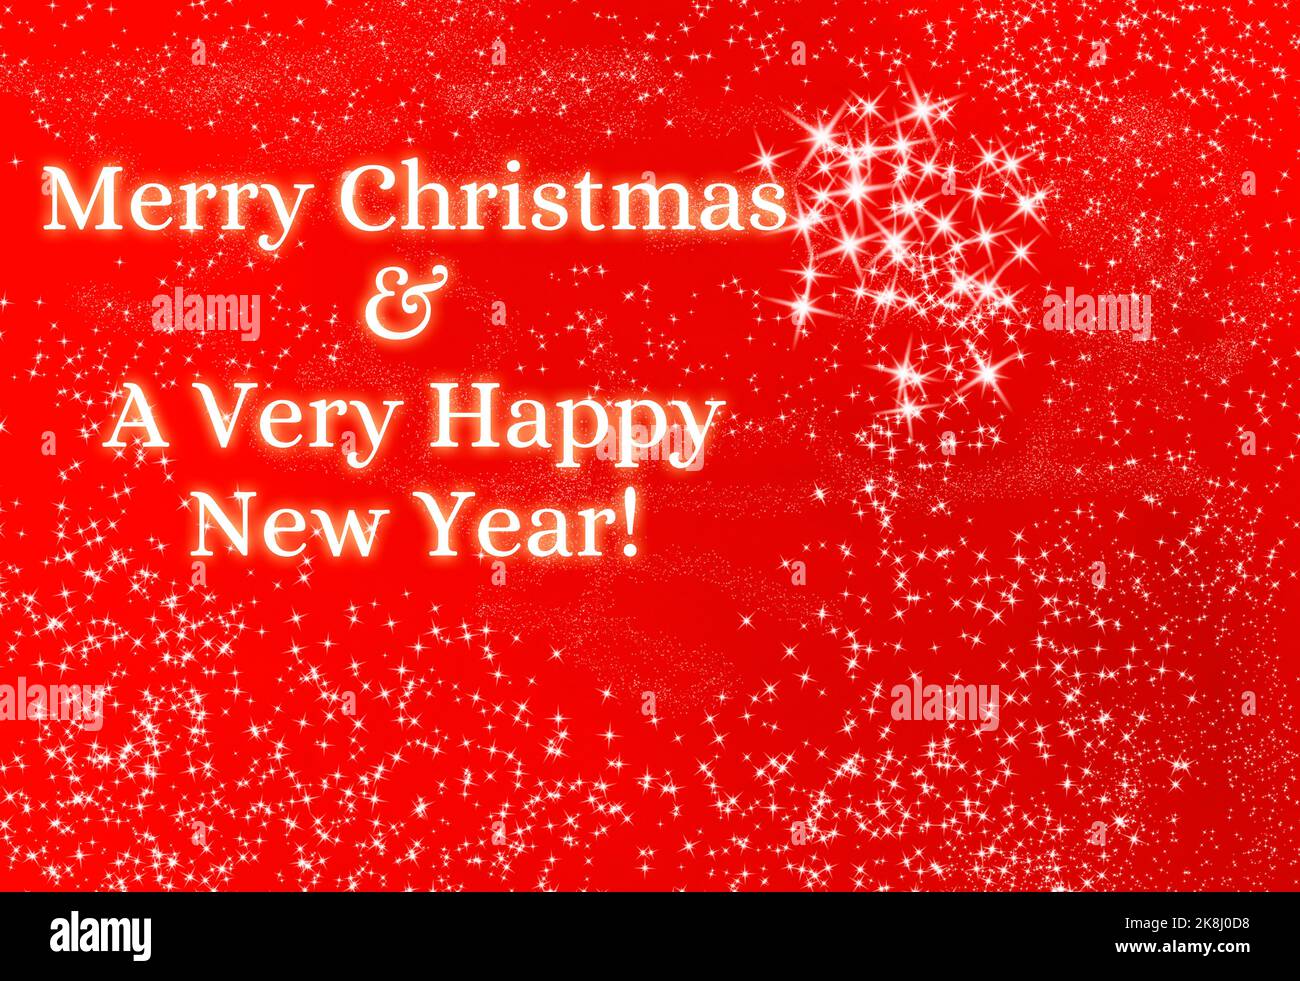 Frohe Weihnachten und frohe Neujahr mit weihnachtlich leuchtenden Sternen auf rotem Hintergrund. Weihnachtsfeier Konzept. Stockfoto